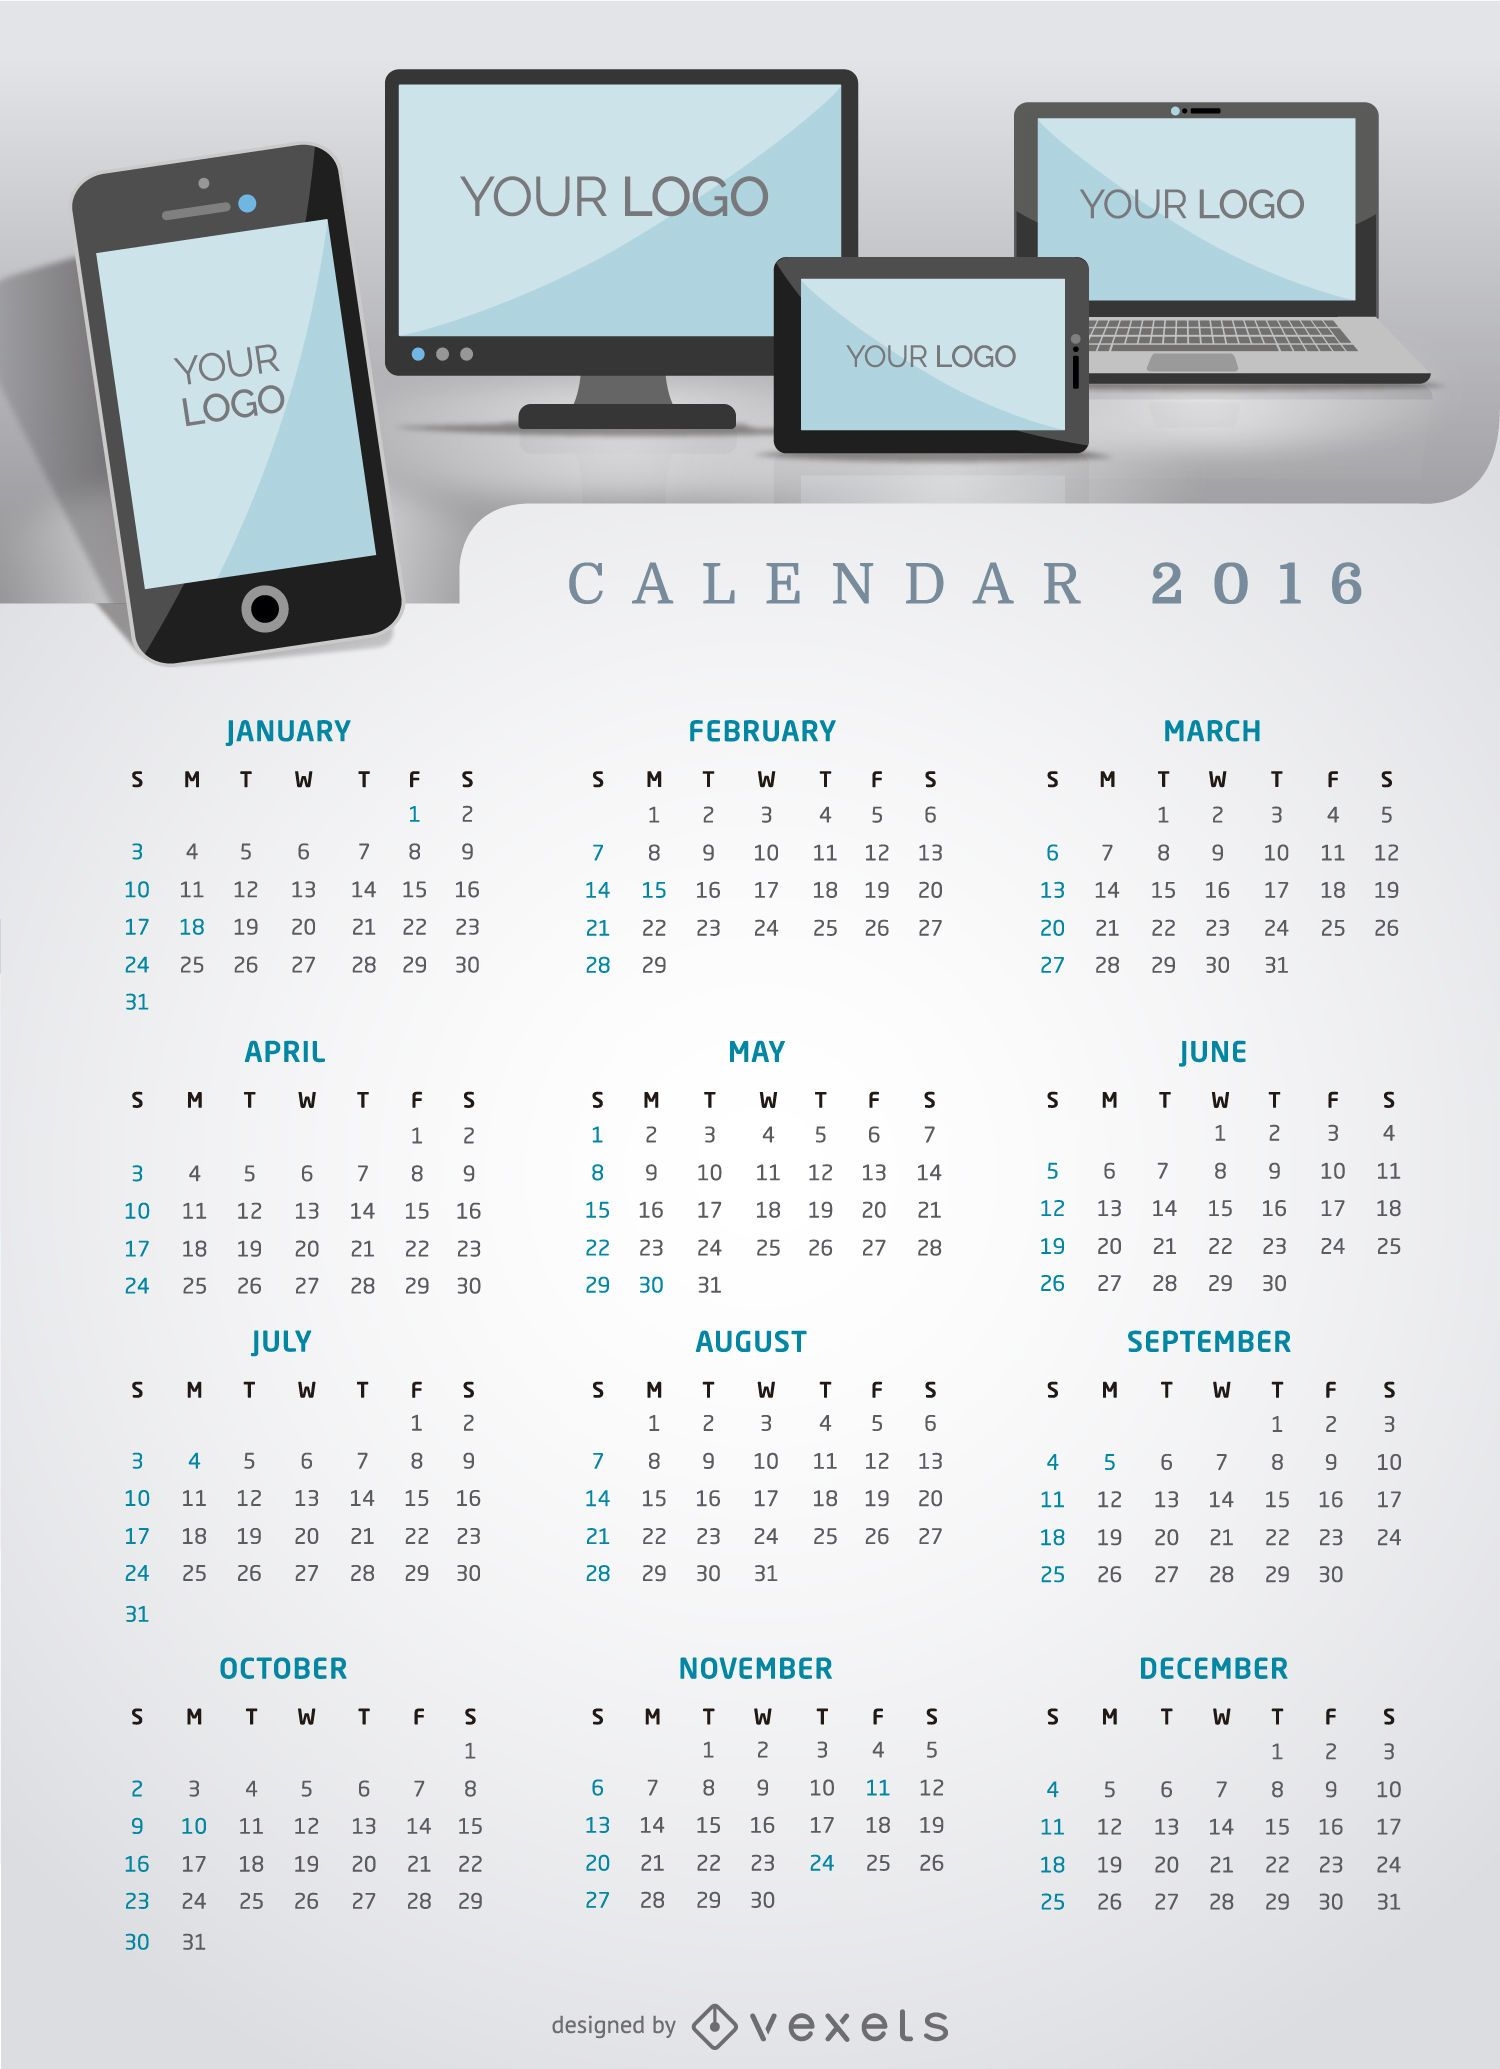 Aplicación multiplataforma o sitio web de Calendar 2016